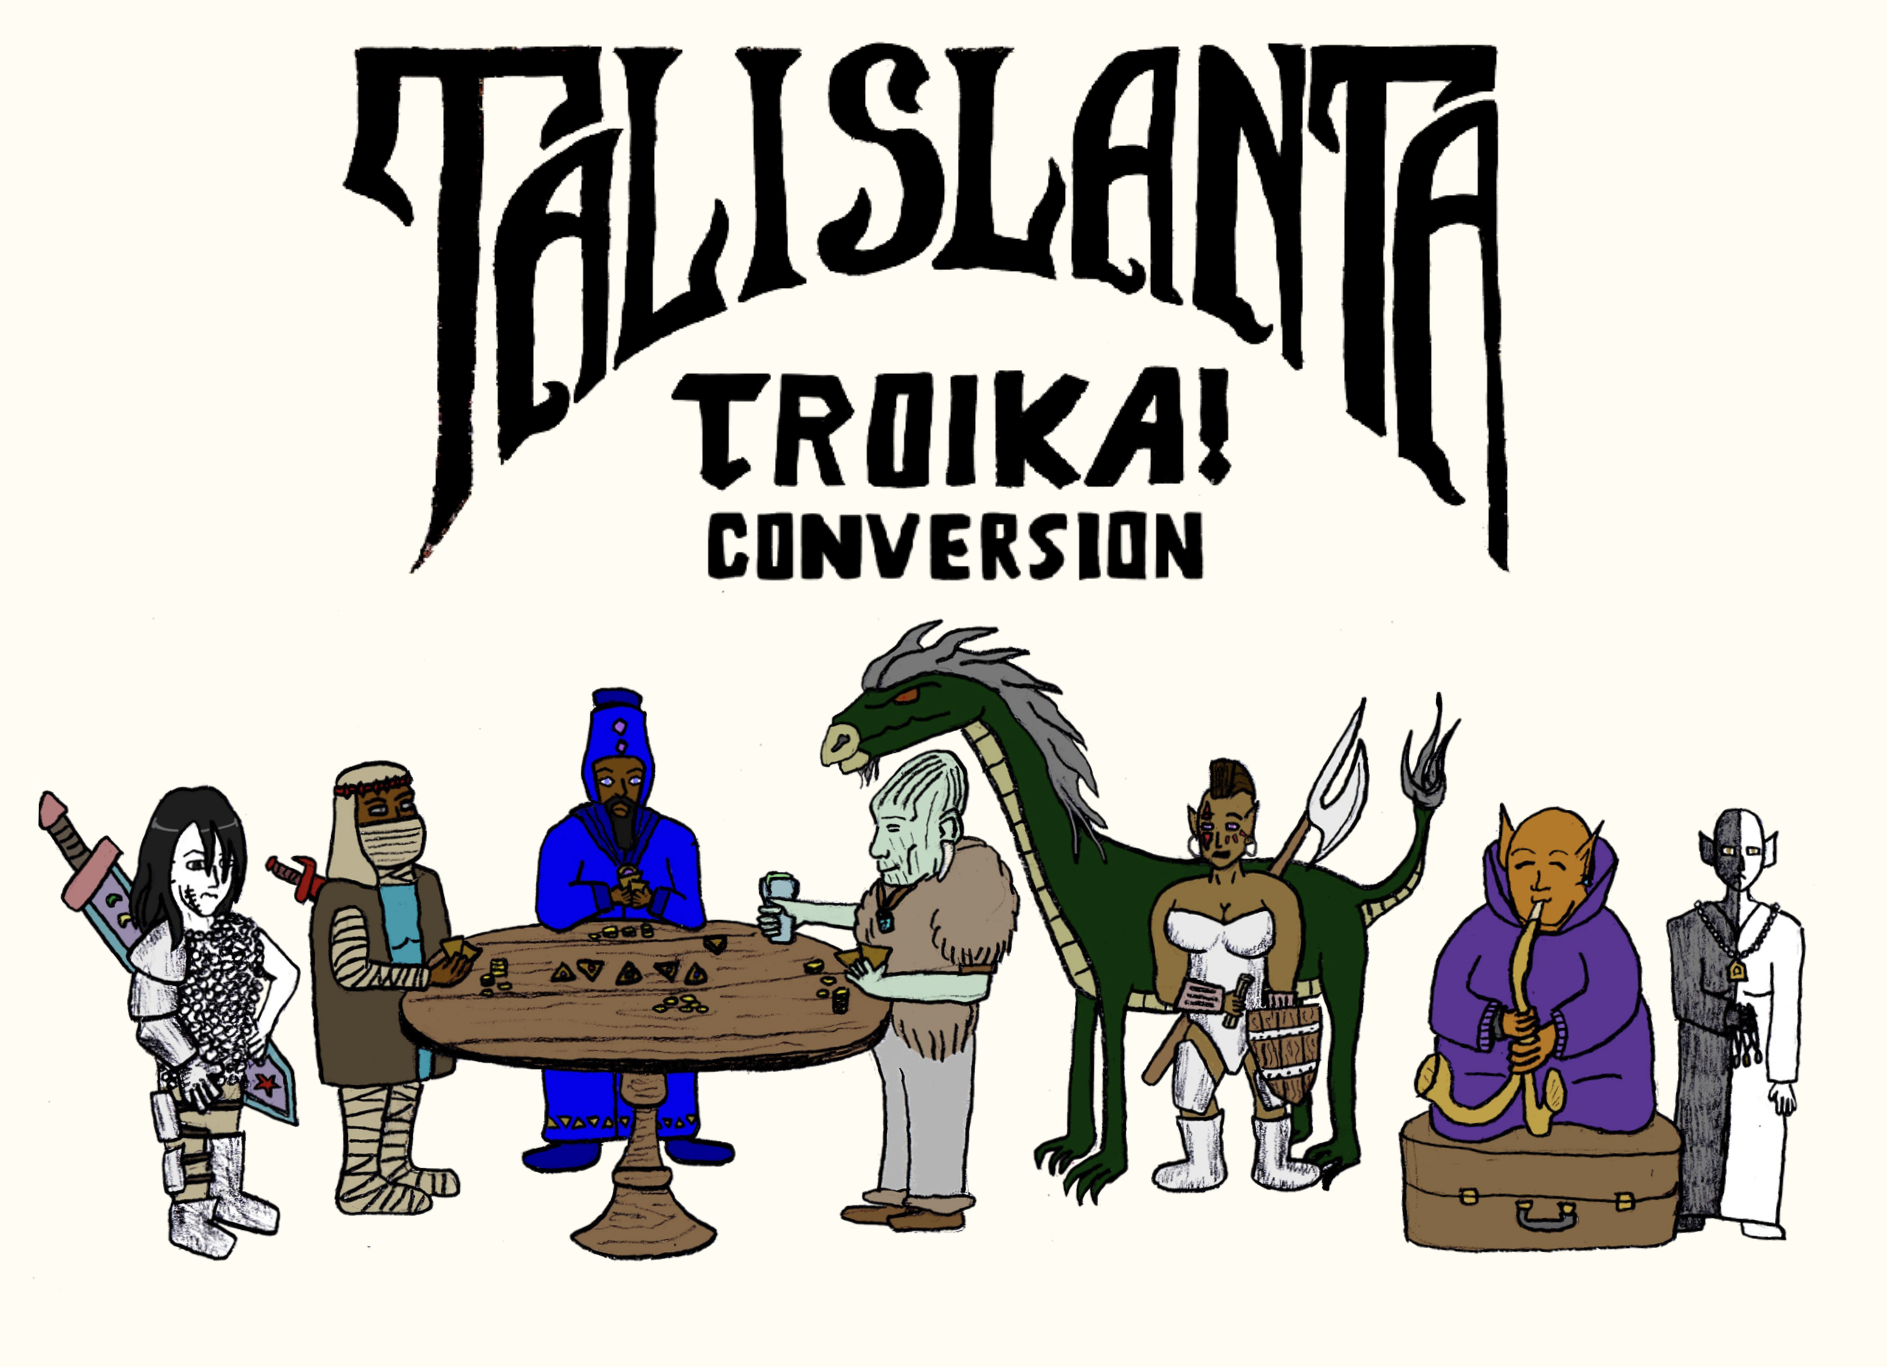 Talislanta for Troika!